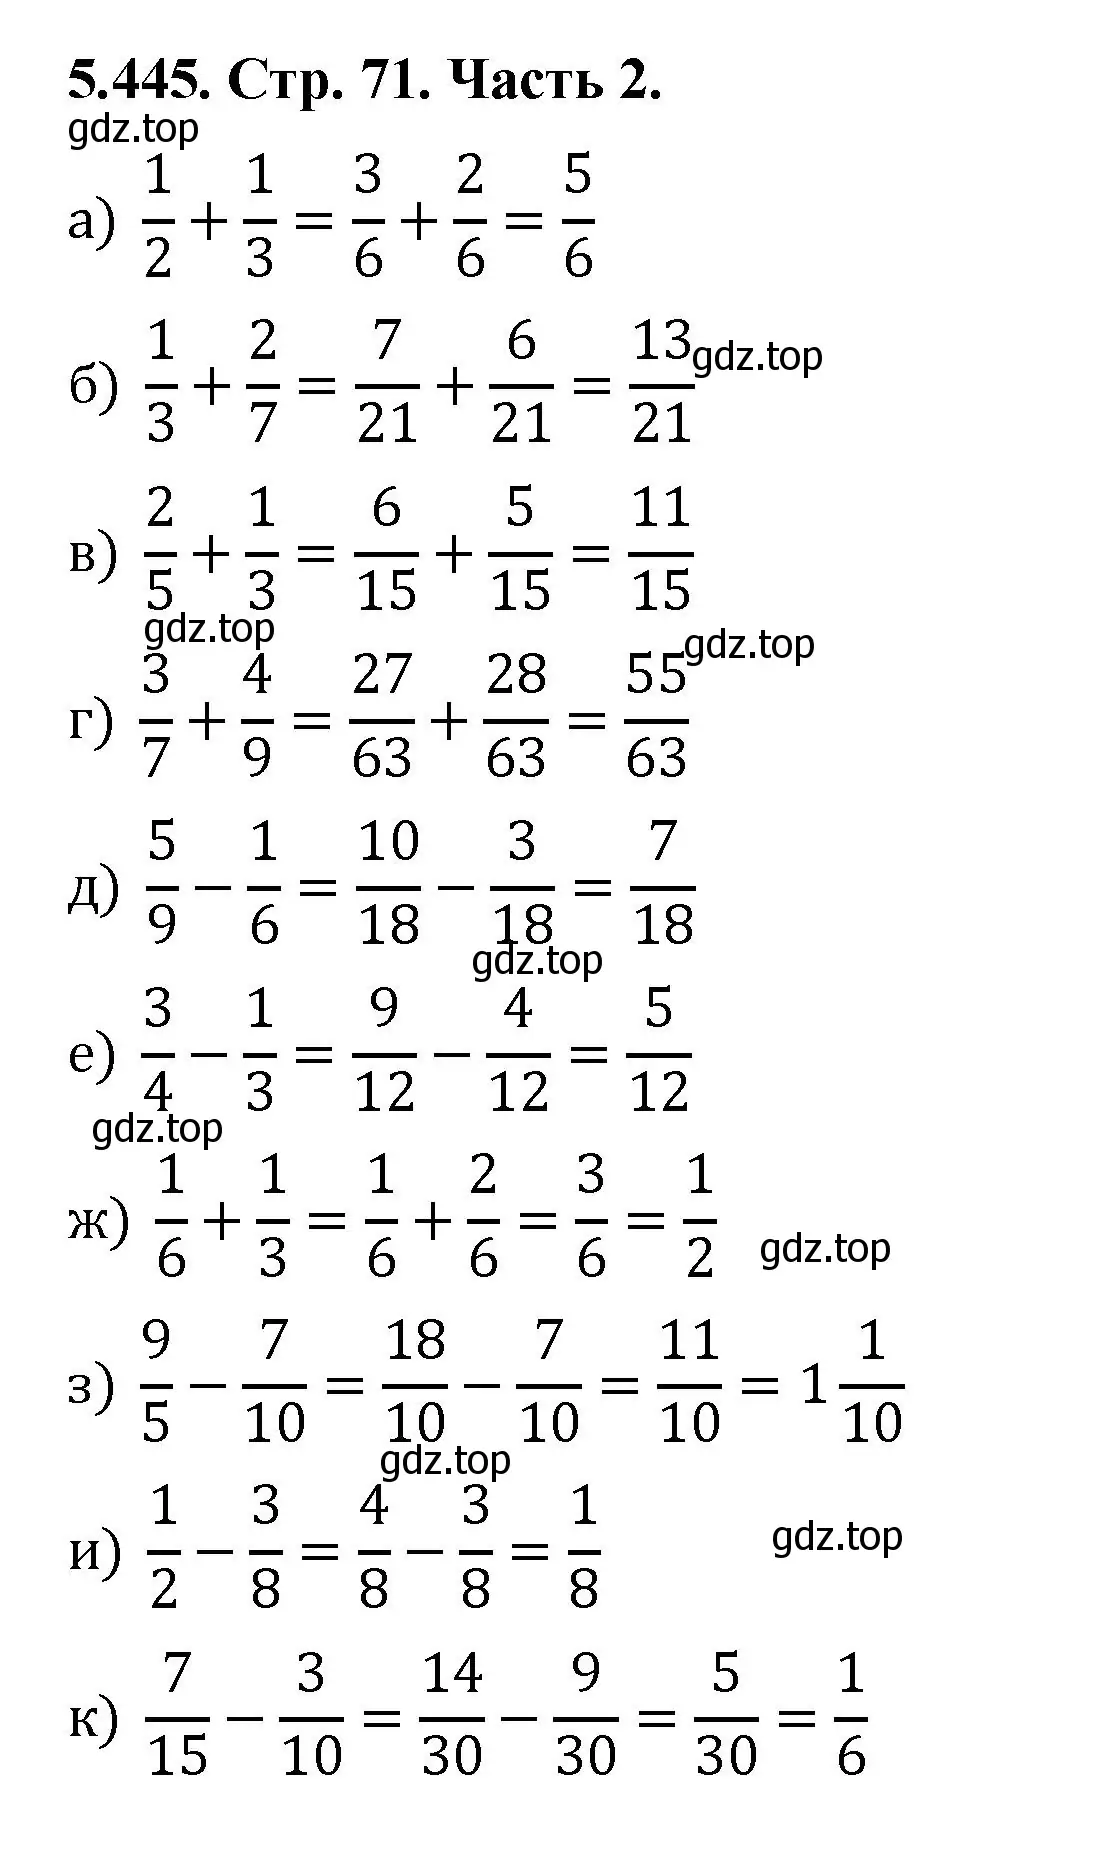 Решение номер 5.445 (страница 71) гдз по математике 5 класс Виленкин, Жохов, учебник 2 часть